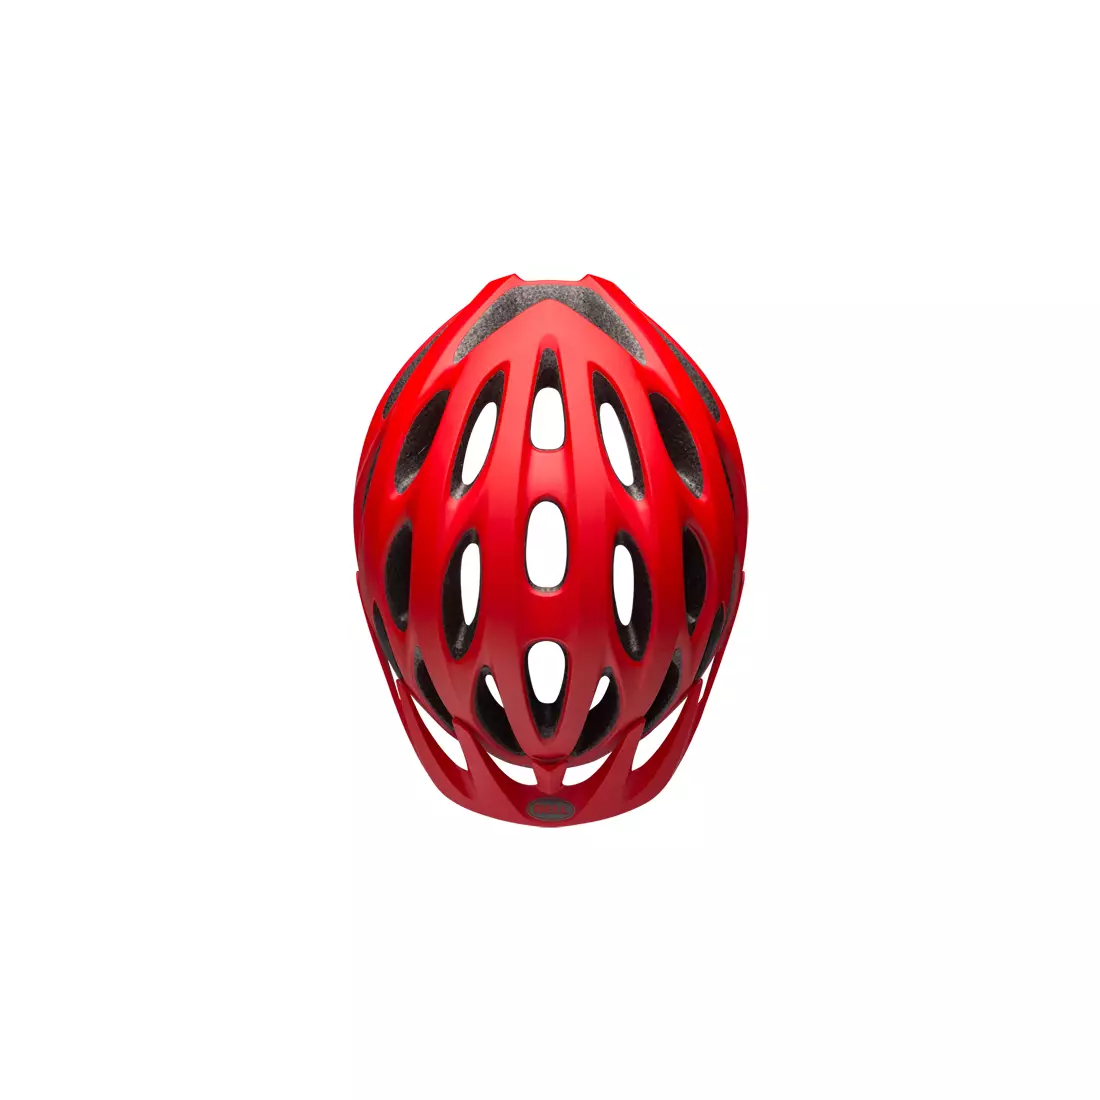 BELL TRACKER - BEL-7082029 - cască de bicicletă roșie